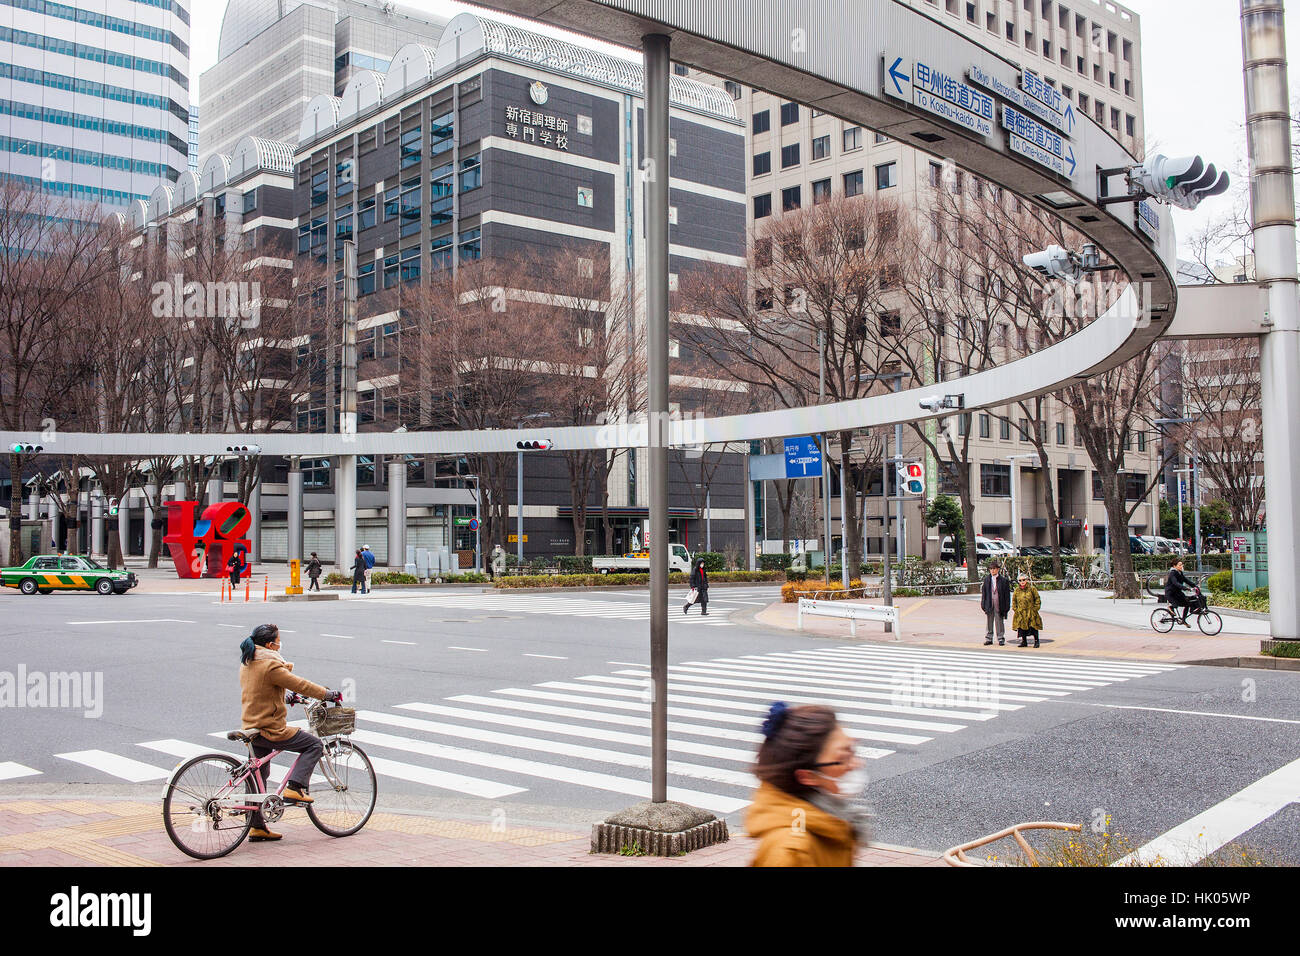 Stadtbild, Zebrastreifen und Semaphore, bei 6 Chome, Westseite, Shinjuku, Tokyo, Japan Stockfoto